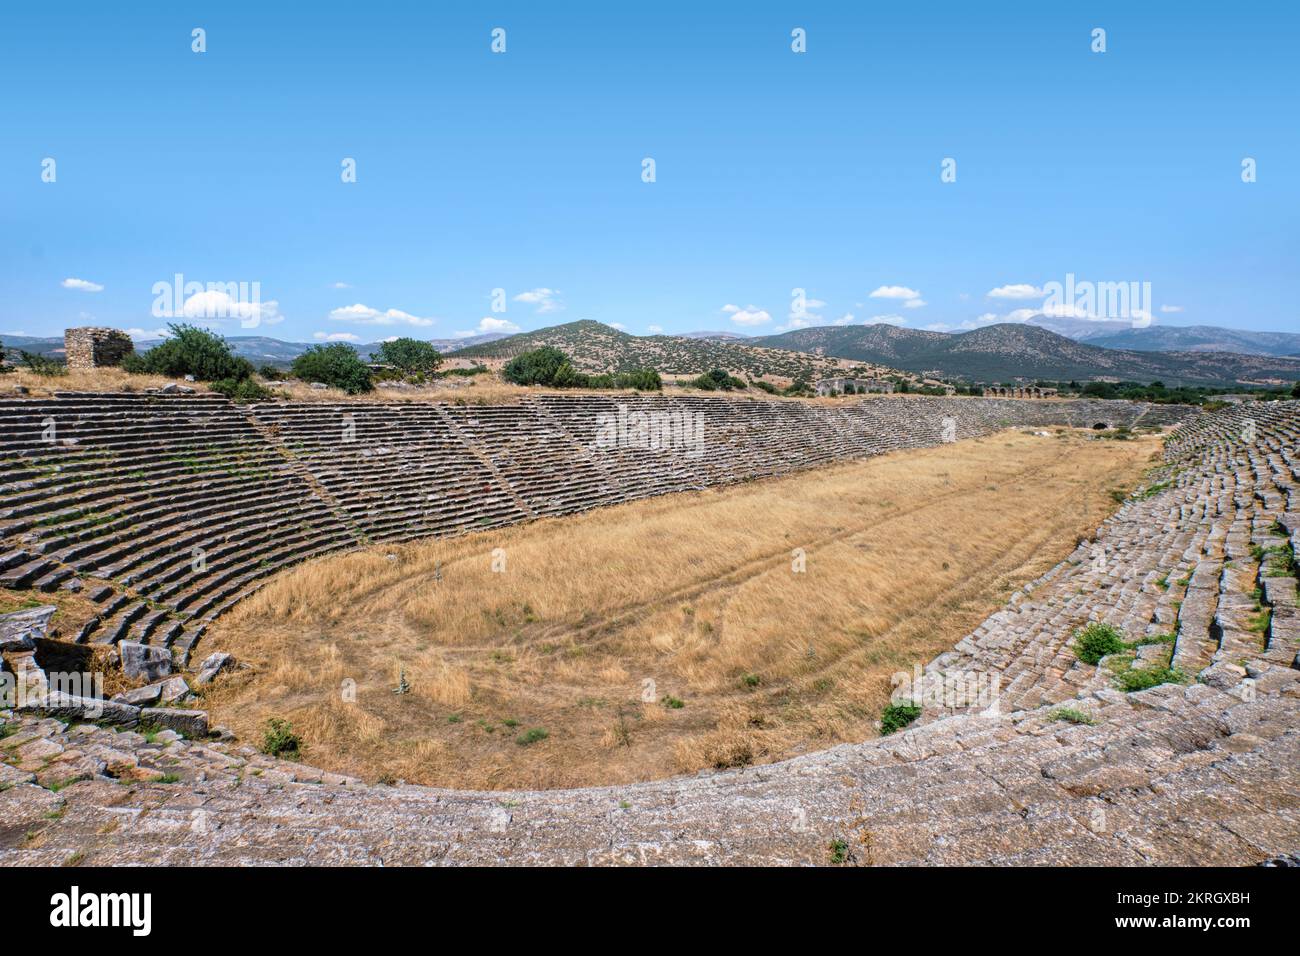 Aydin, Türkei - 12. August 2021: Aphrodisias-Stadion, eine kleine antike griechische hellenistische Stadt in der historischen karianischen Kulturregion weste Stockfoto